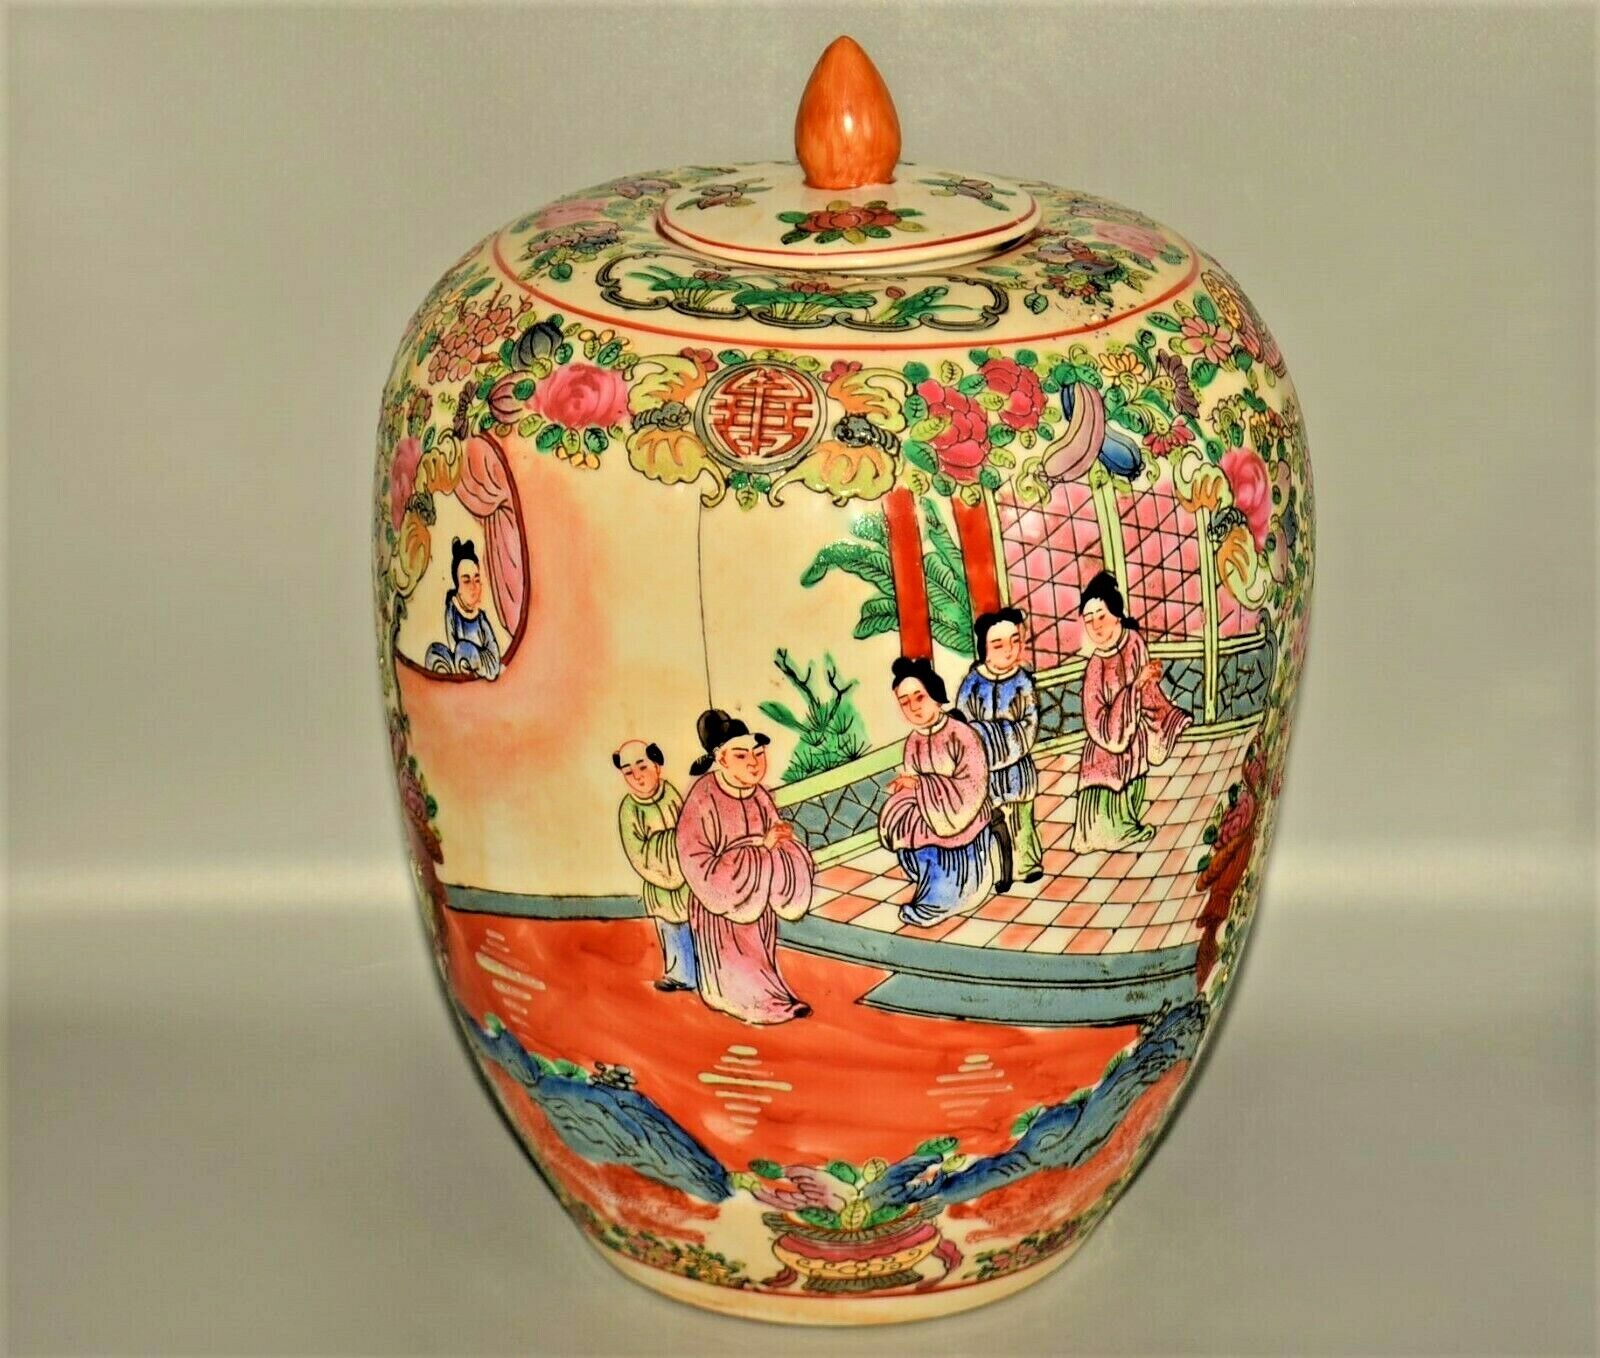 Antique Original Vintage Chinese Imperial Famille Rose Porcelain Vase Ginger Jar